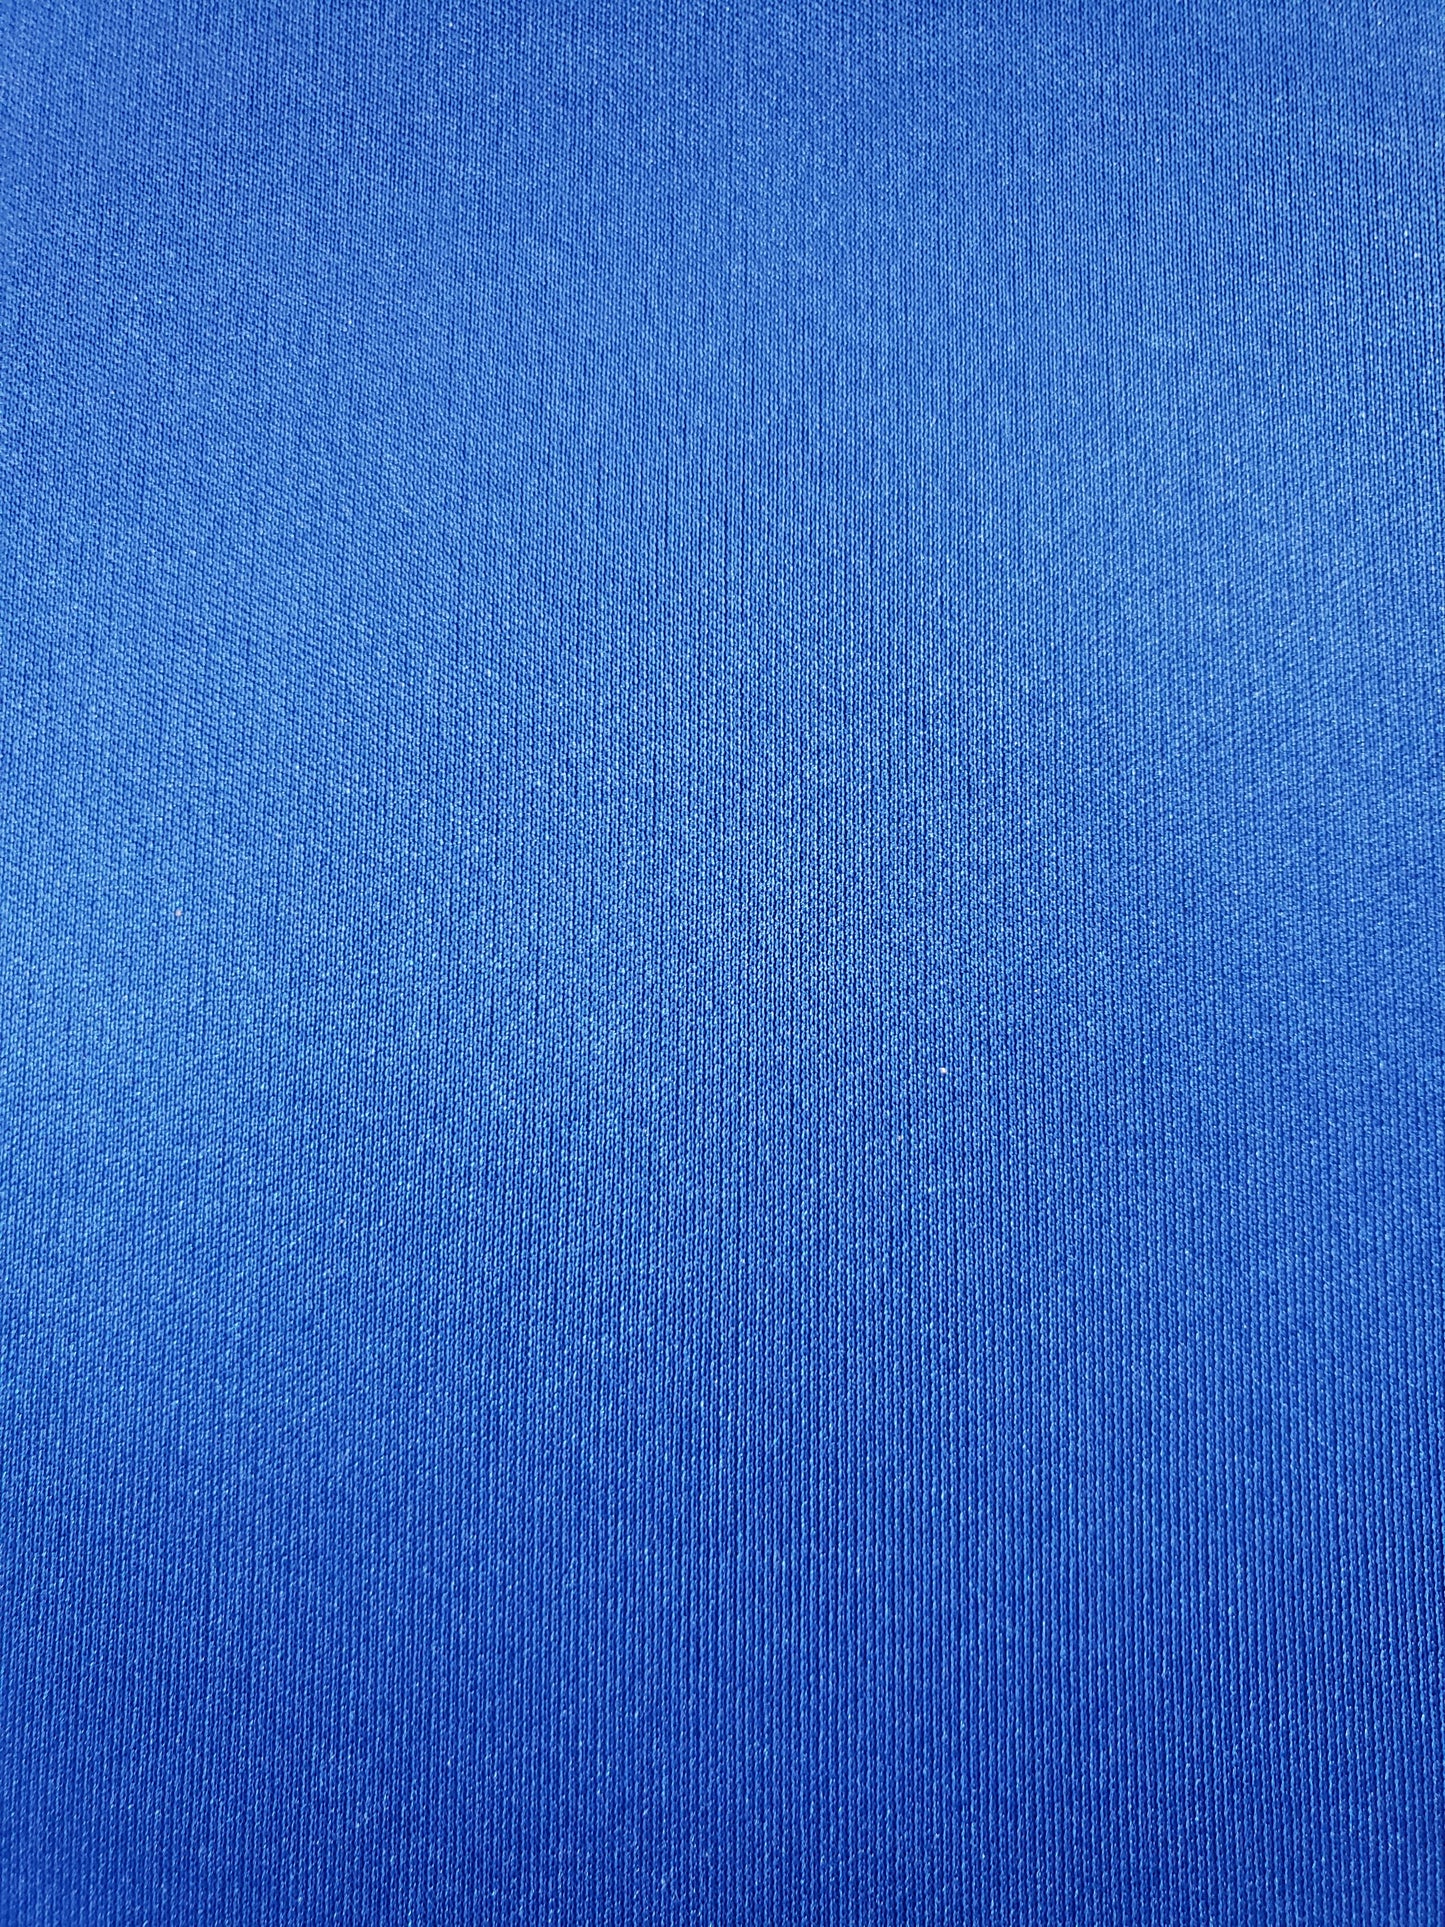 Tissu pul imperméable bleu royal